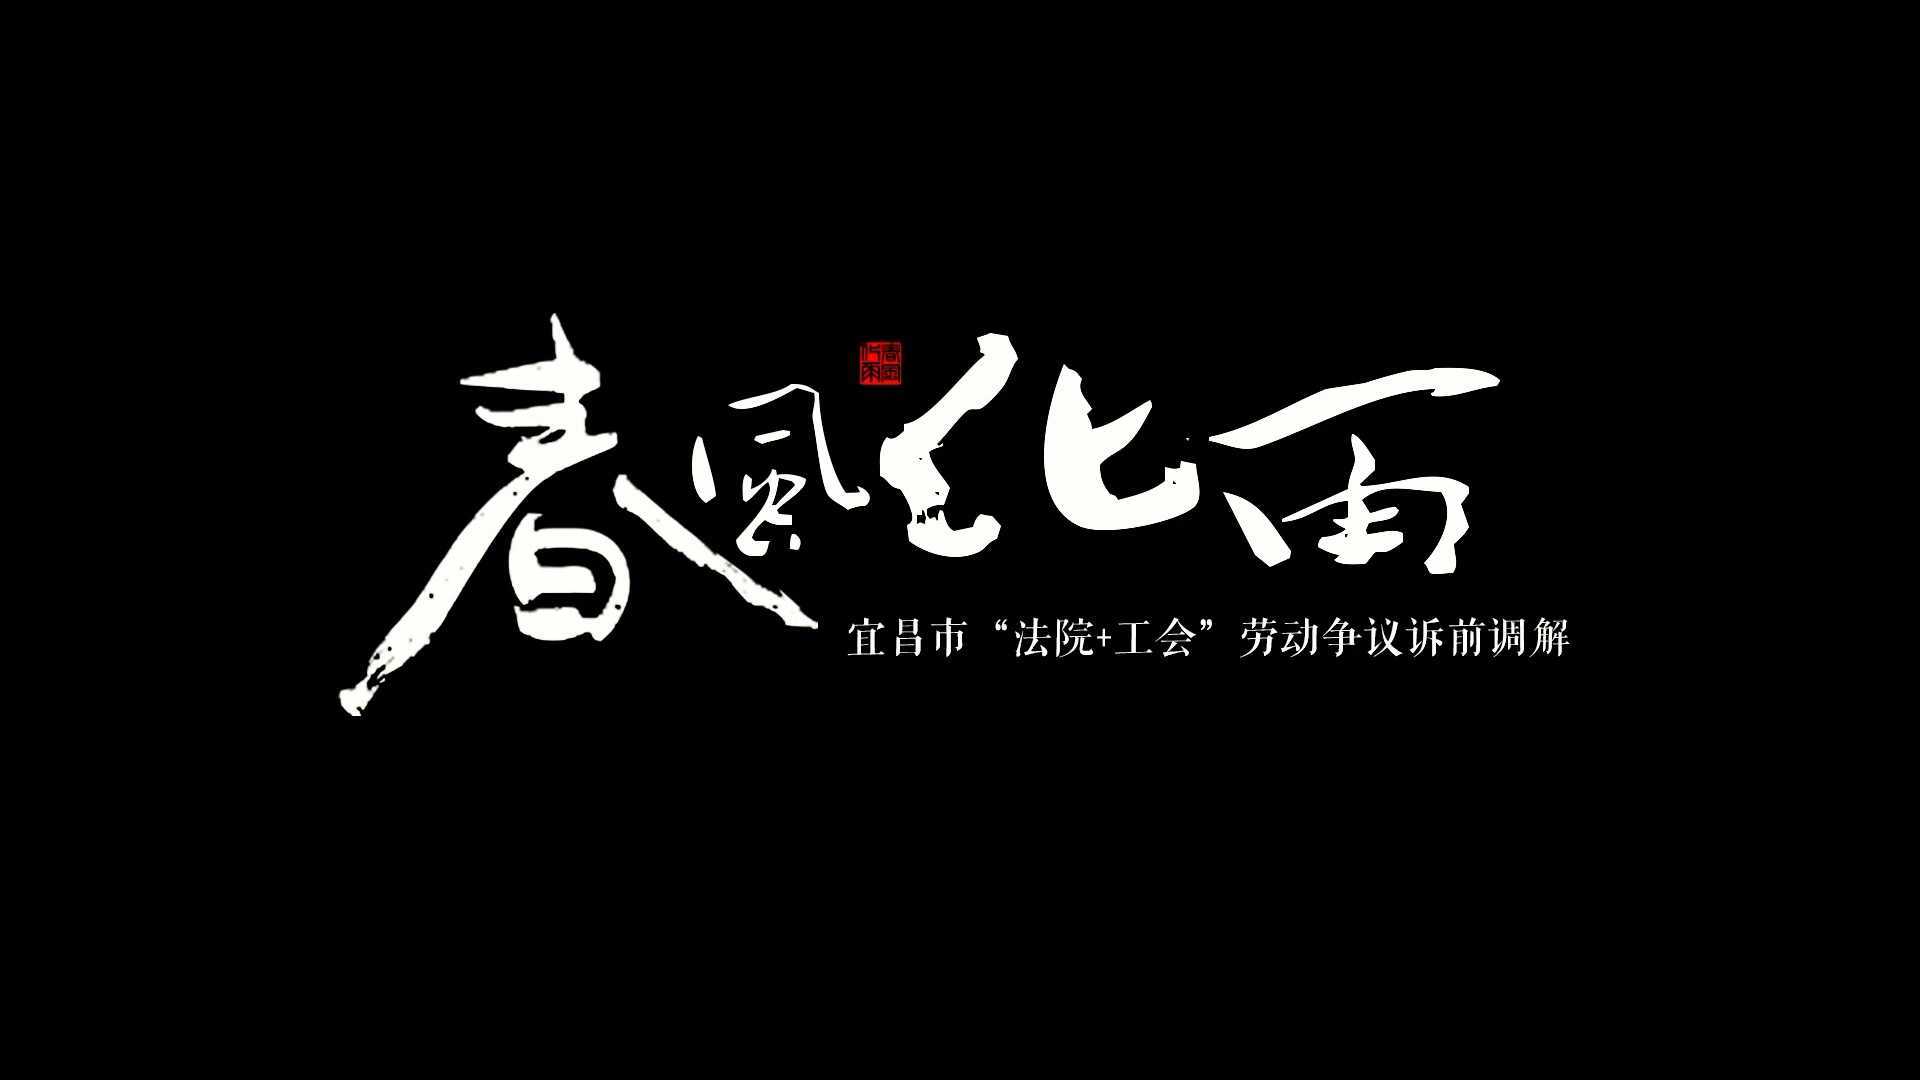 《春风化雨》 ——宜昌市“法院+工会”劳动争议诉前调解